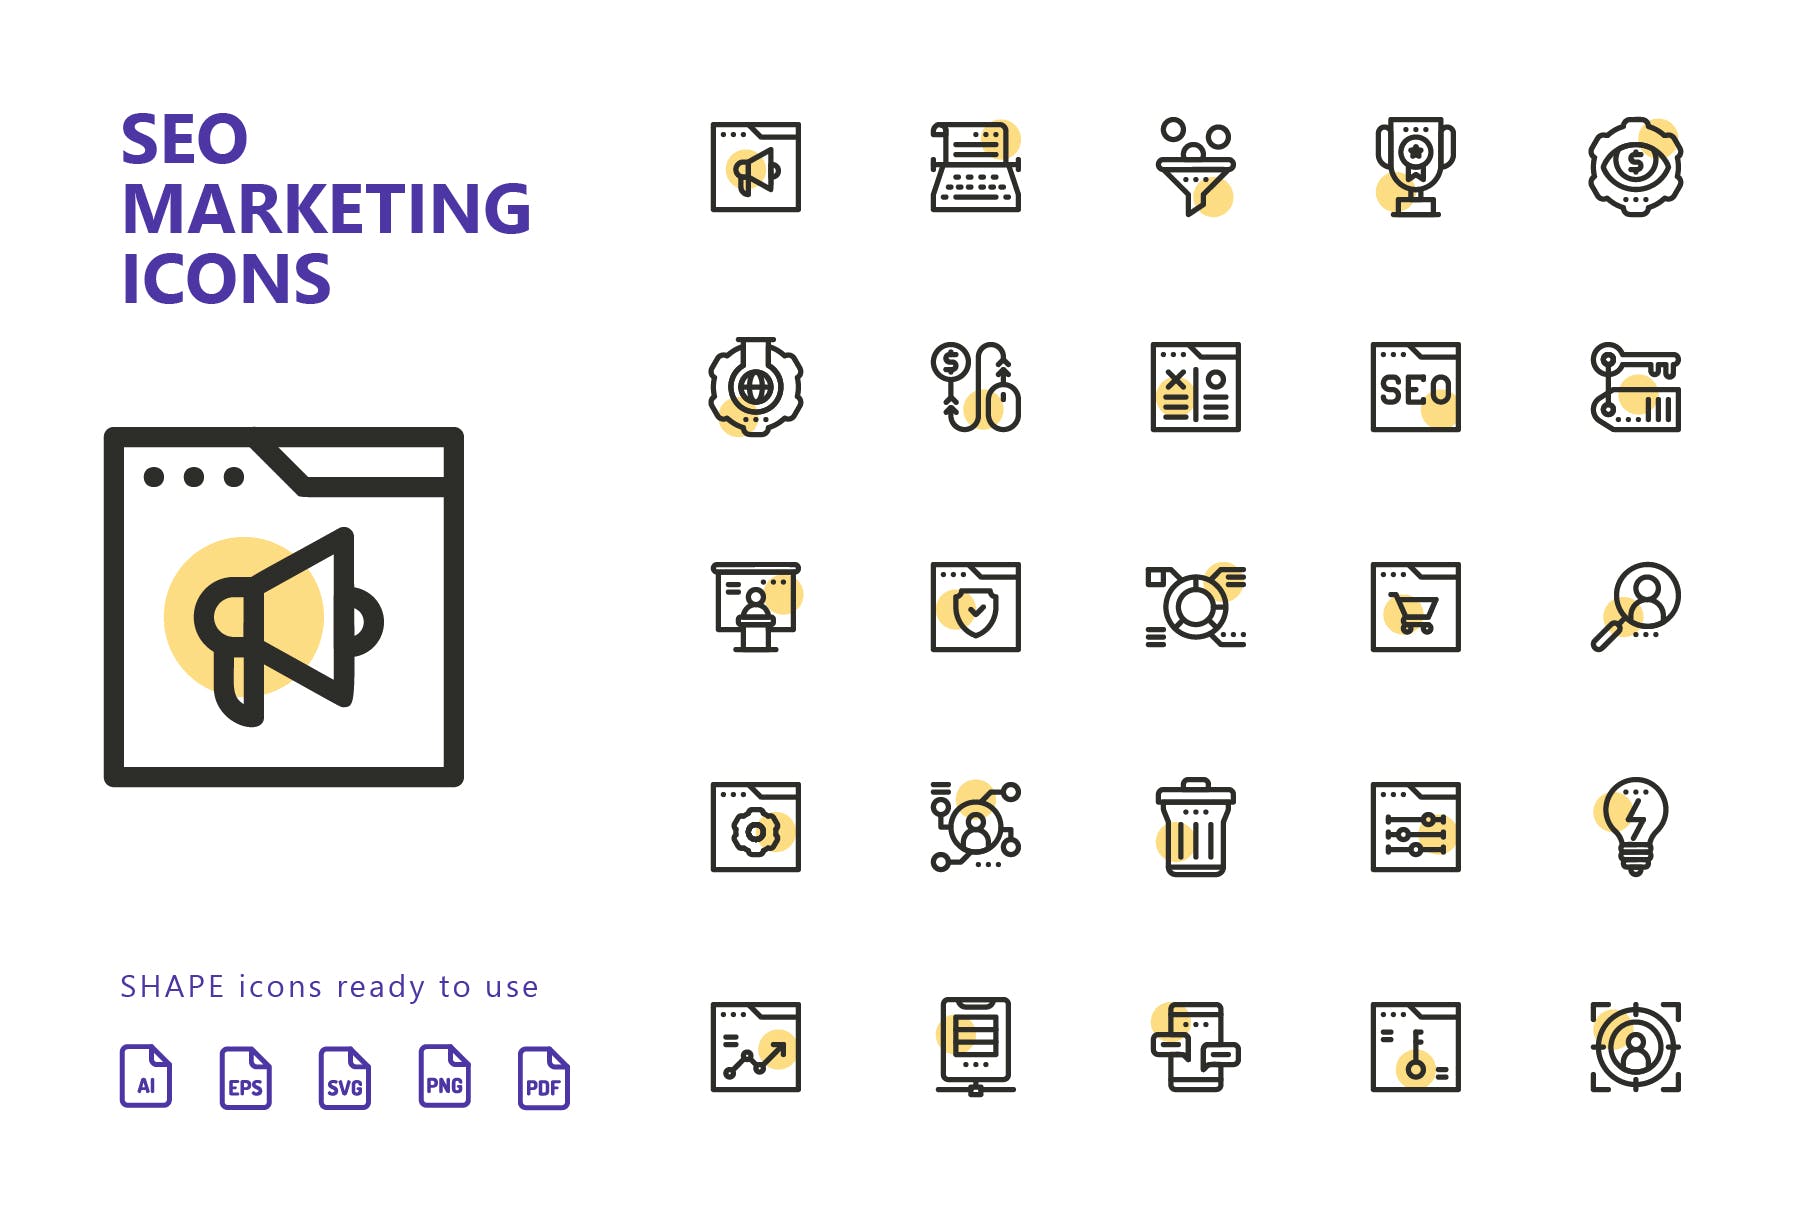 25枚SEO搜索引擎优化营销矢量圆点装饰蚂蚁素材精选图标v2 SEO Marketing Shape Icons插图(1)